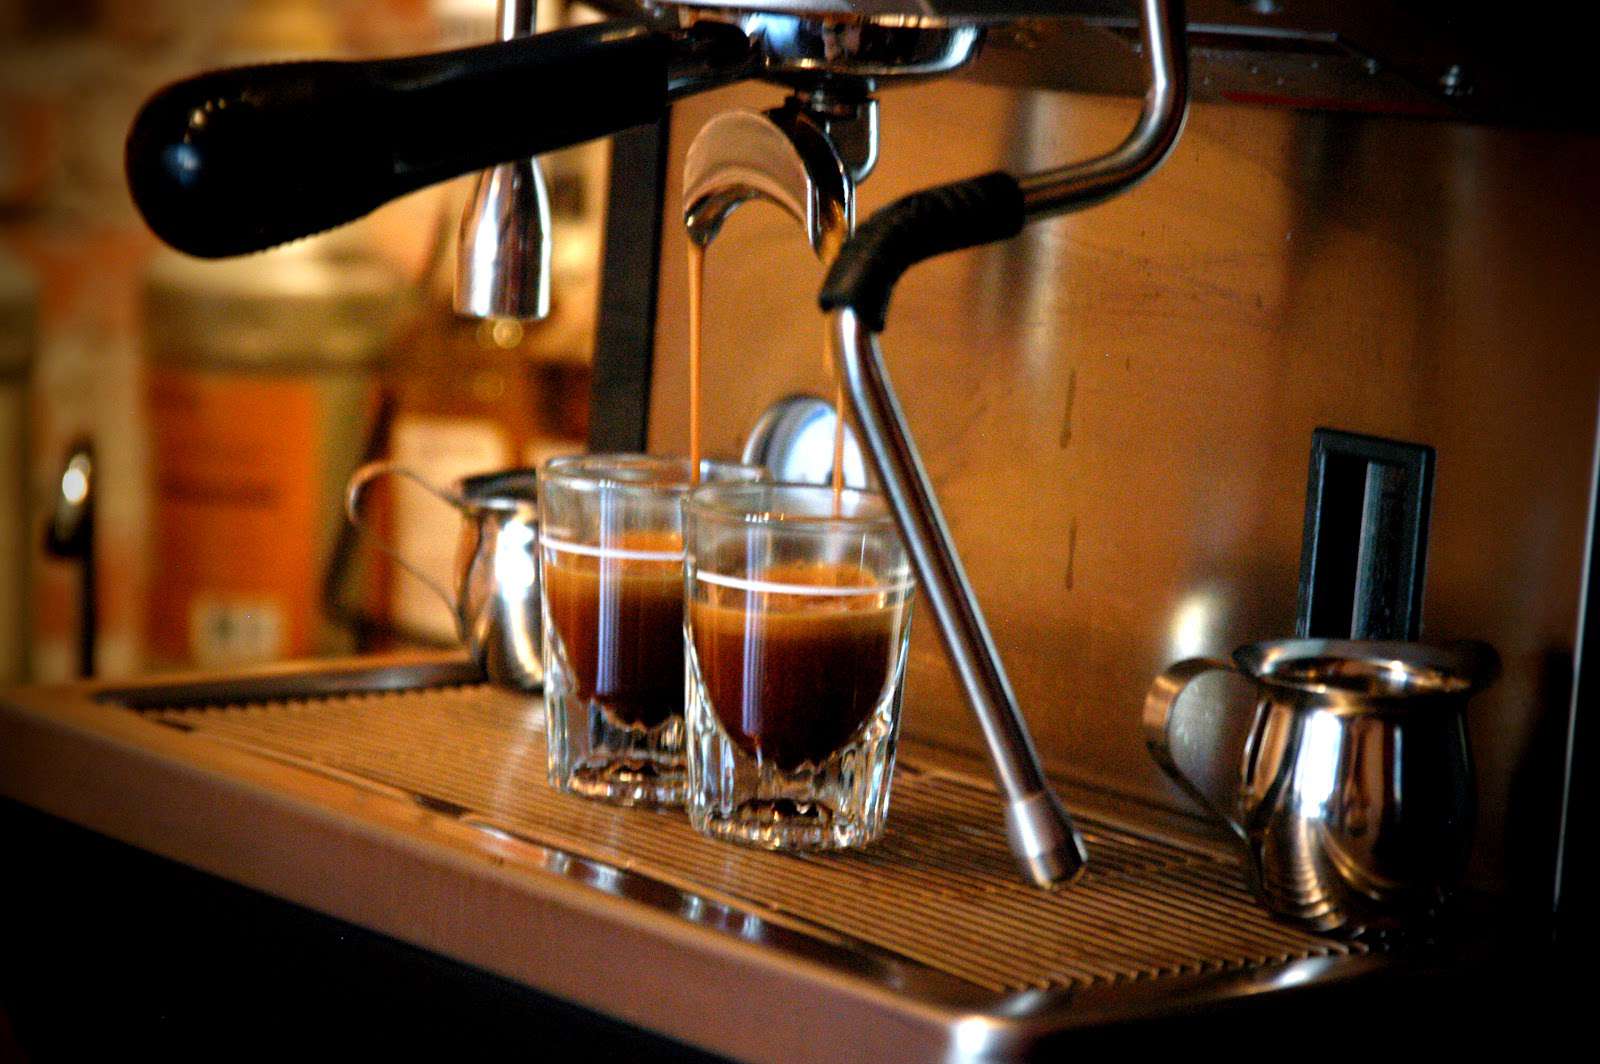 cà phê chồn vip vn túi đen cao cấp-cà phê thơm ngon tuyệt vời-đặc sản tây nguyên[ 1 gói 500gr giá ưu đãi ]chọn 1 gói dùng và cảm nhận 5